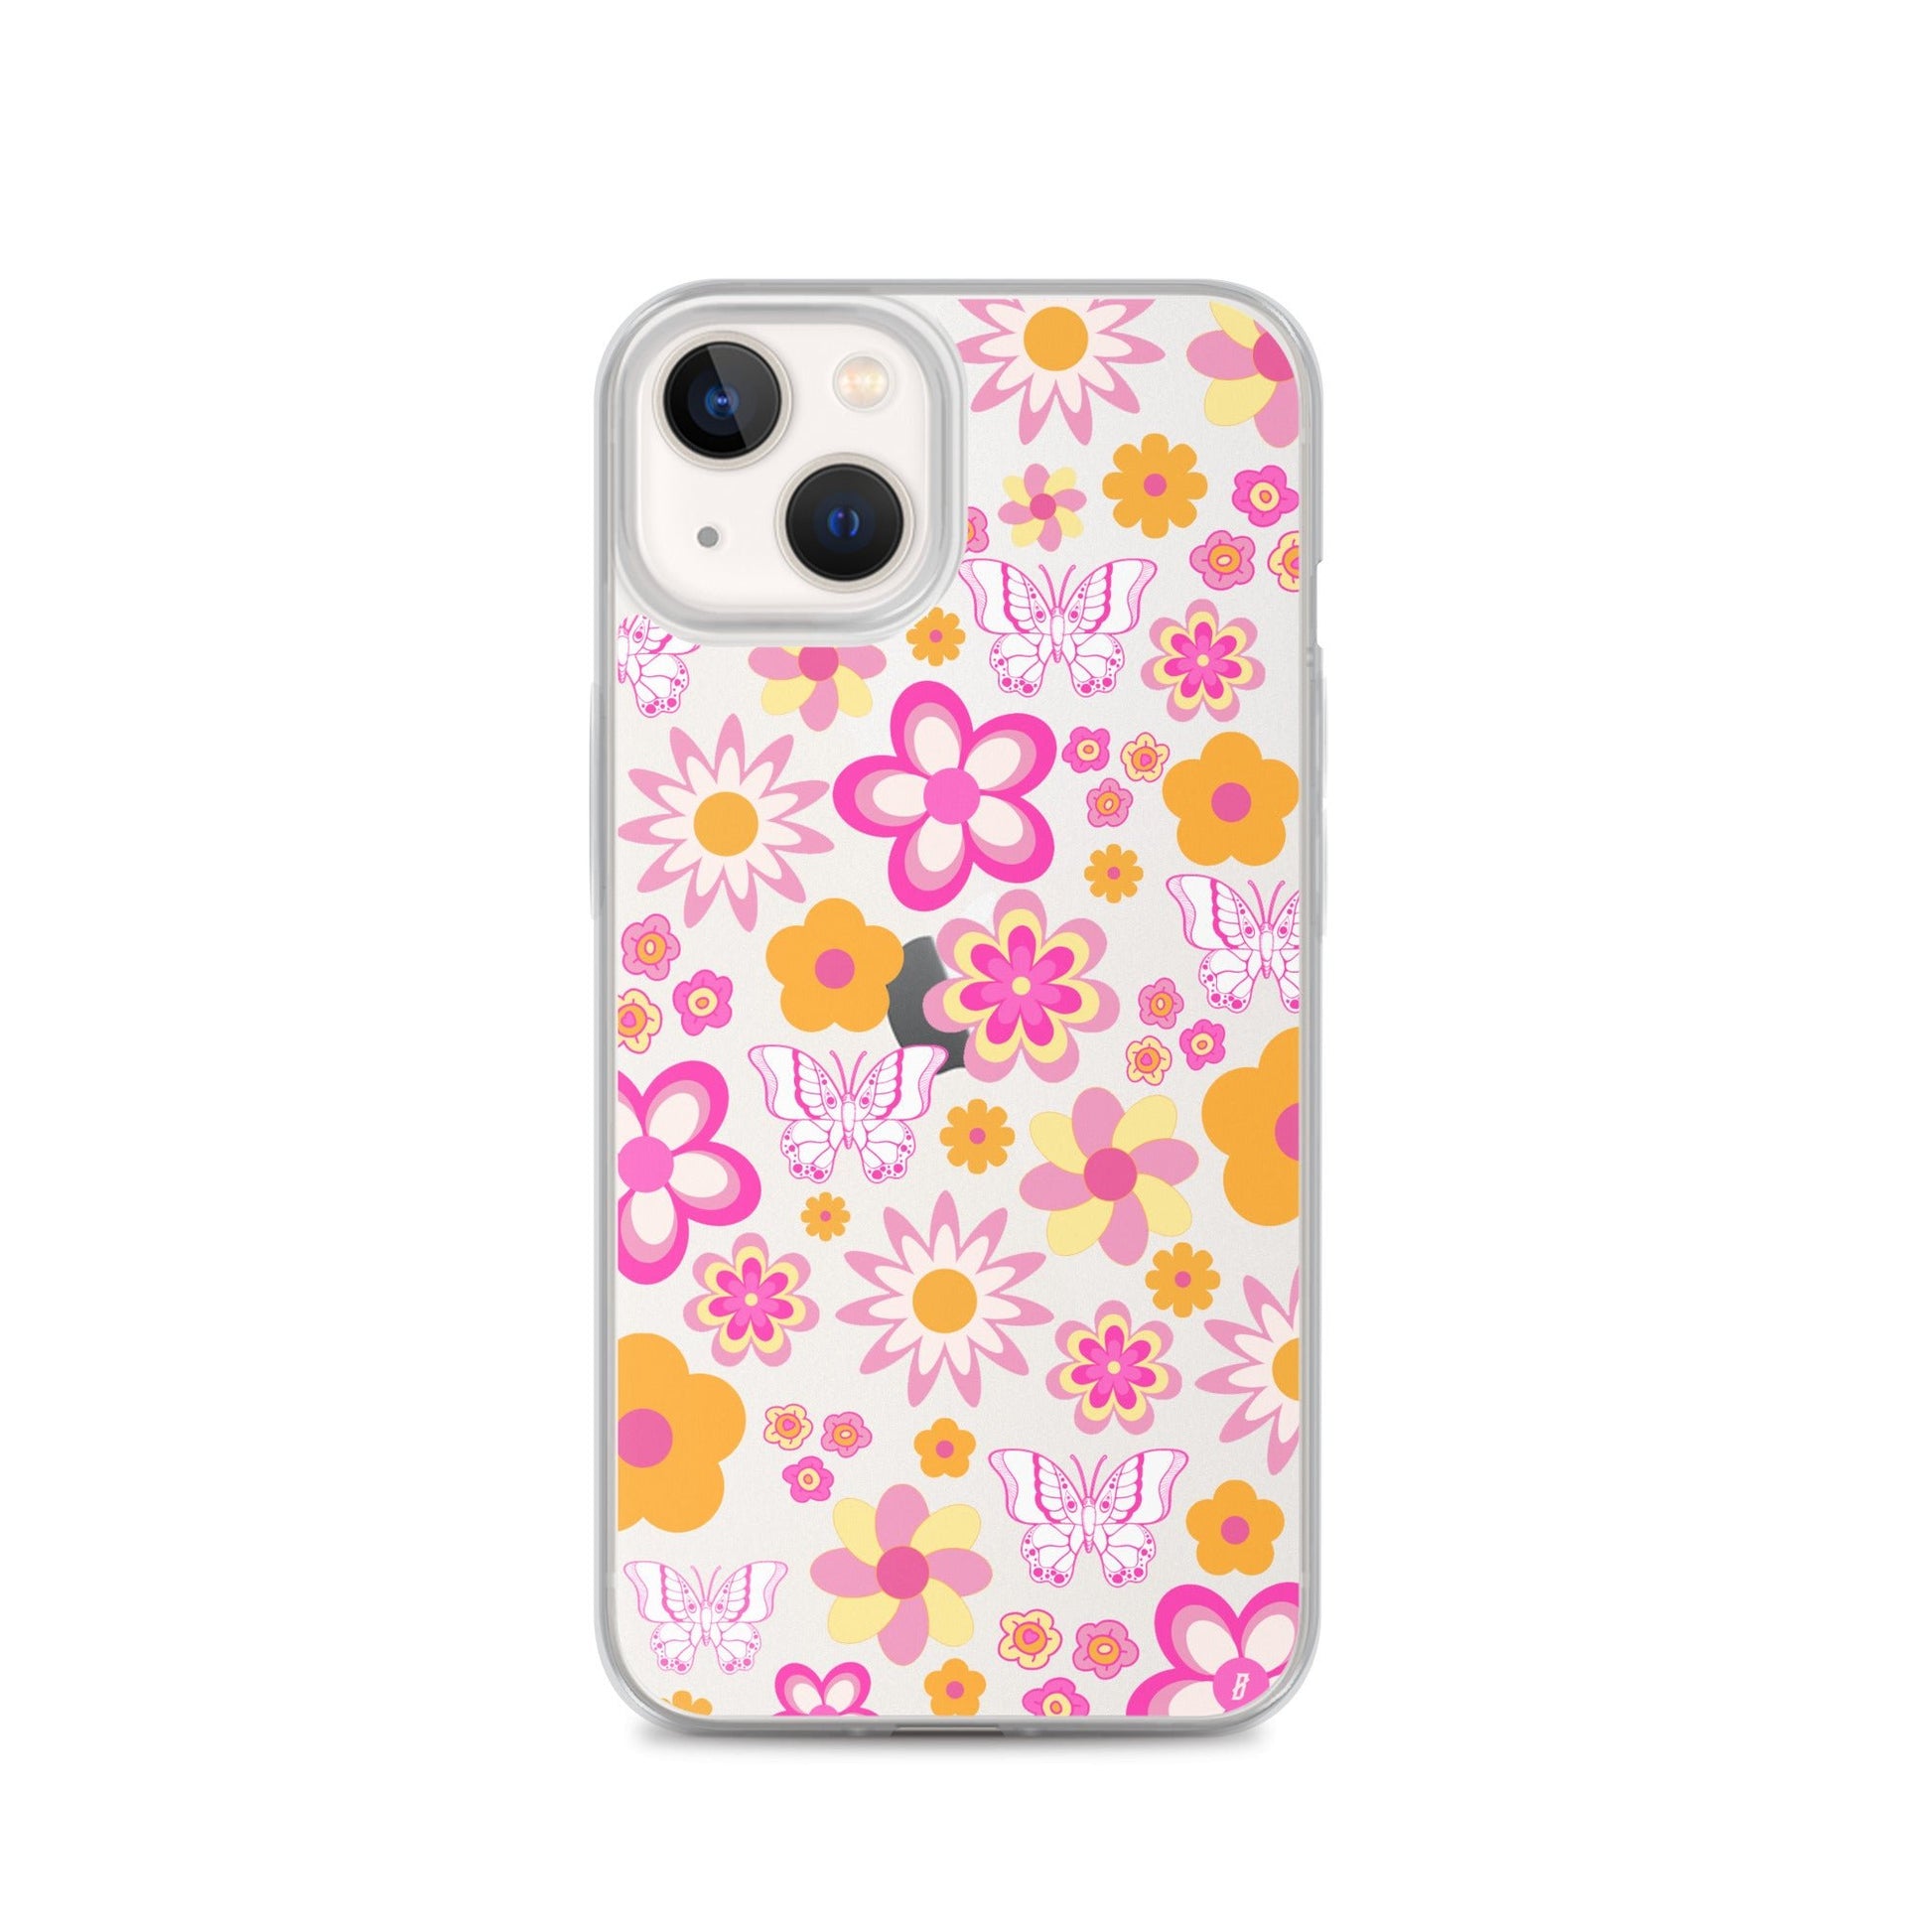 Mariposa iPhone Case - blunt cases